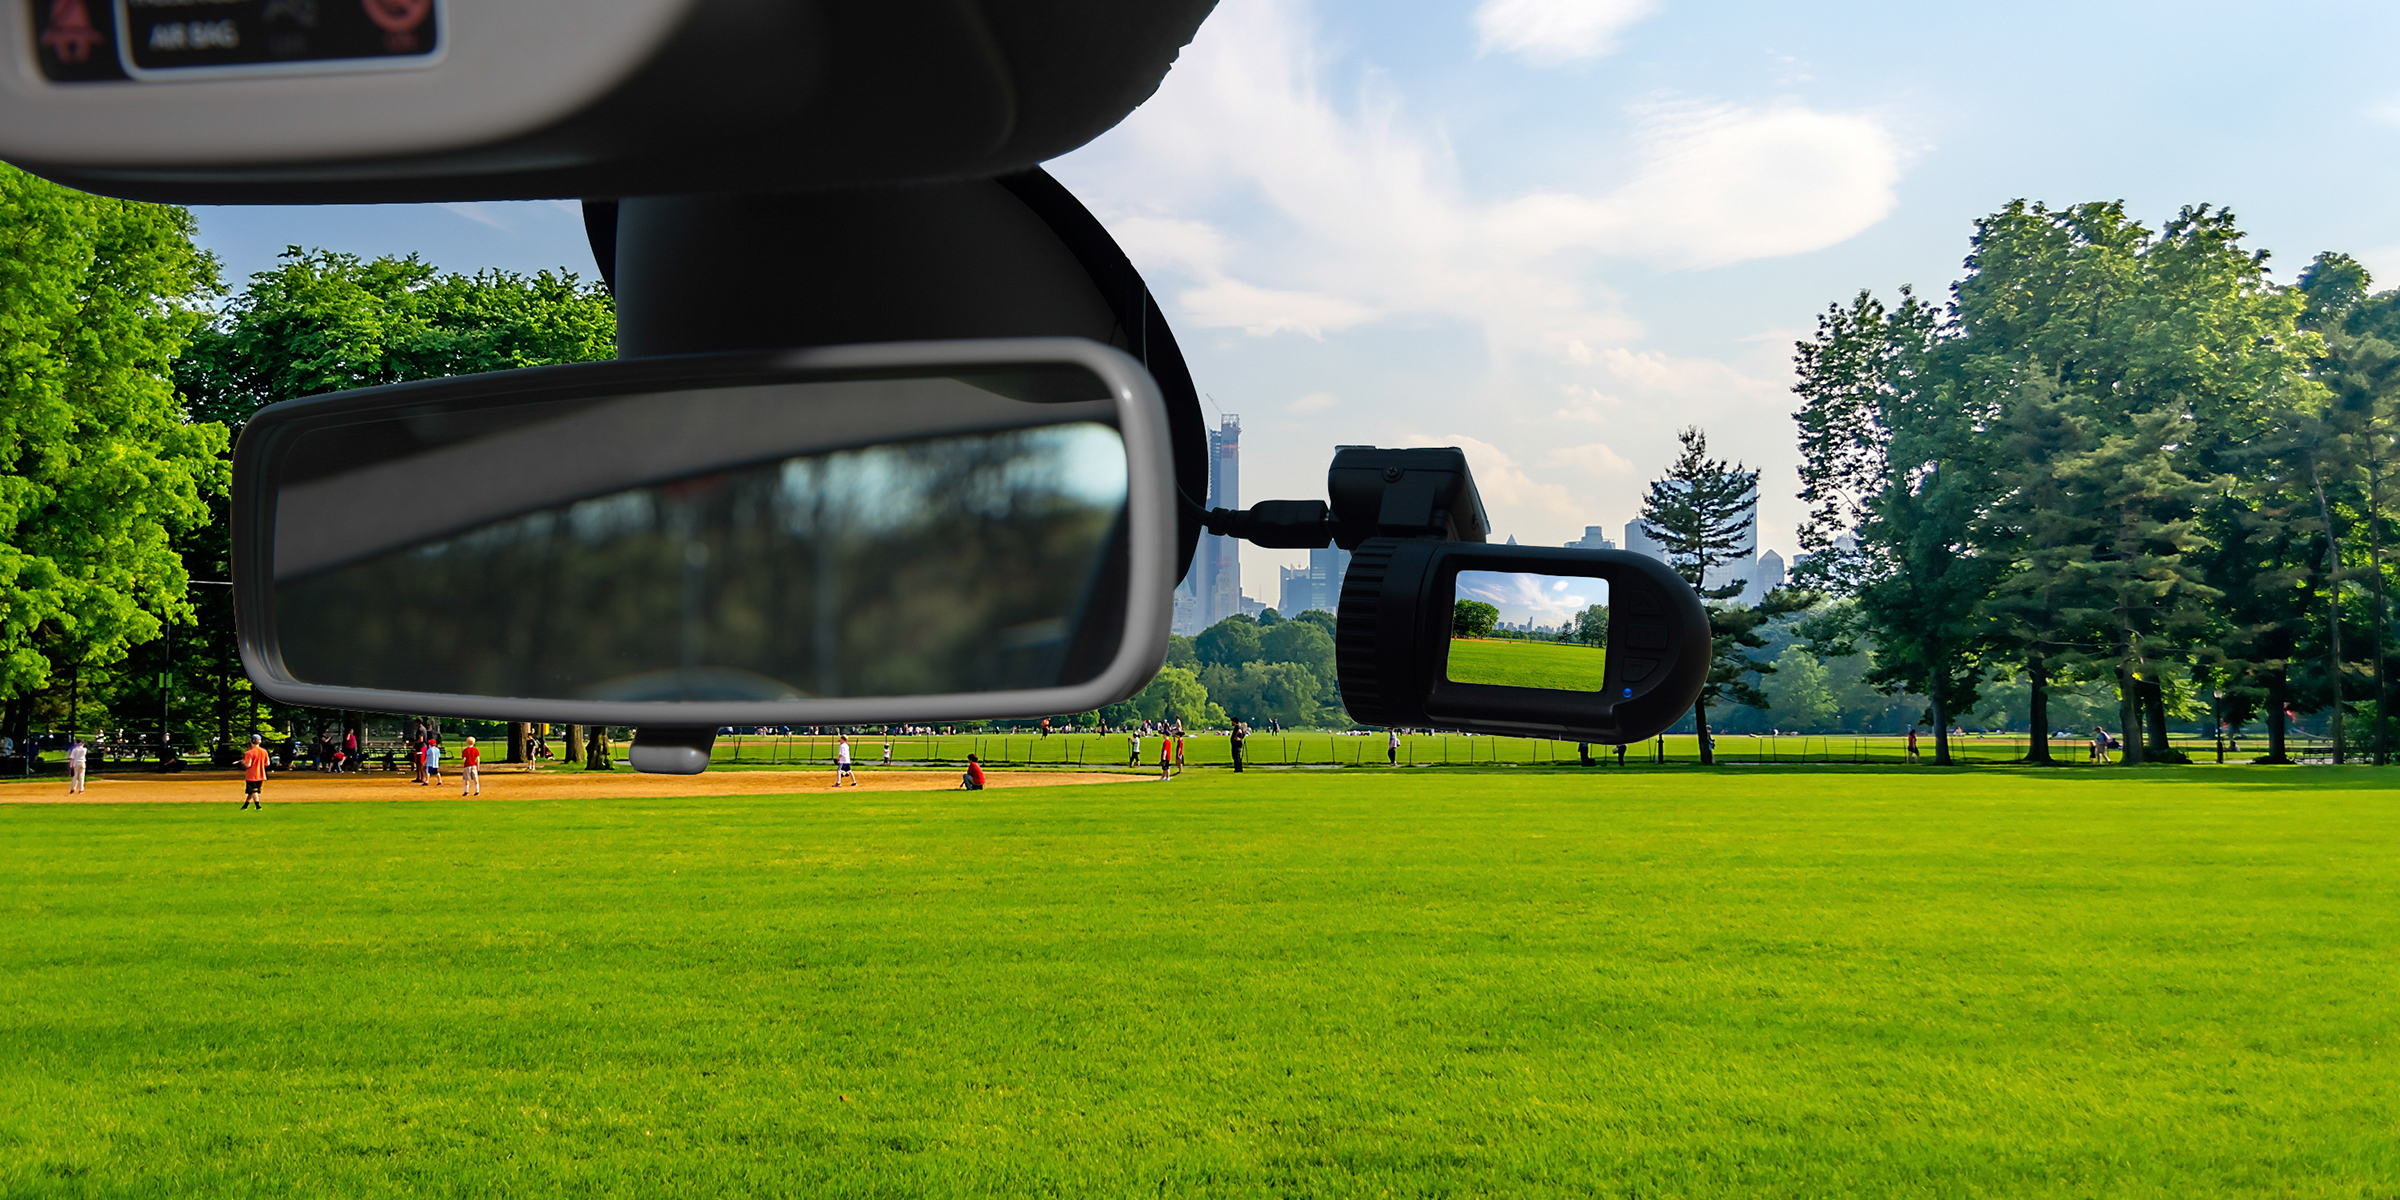 Eine Dashcam-Autokamera, die an einer Windschutzscheibe installiert ist | Quelle: Getty Images